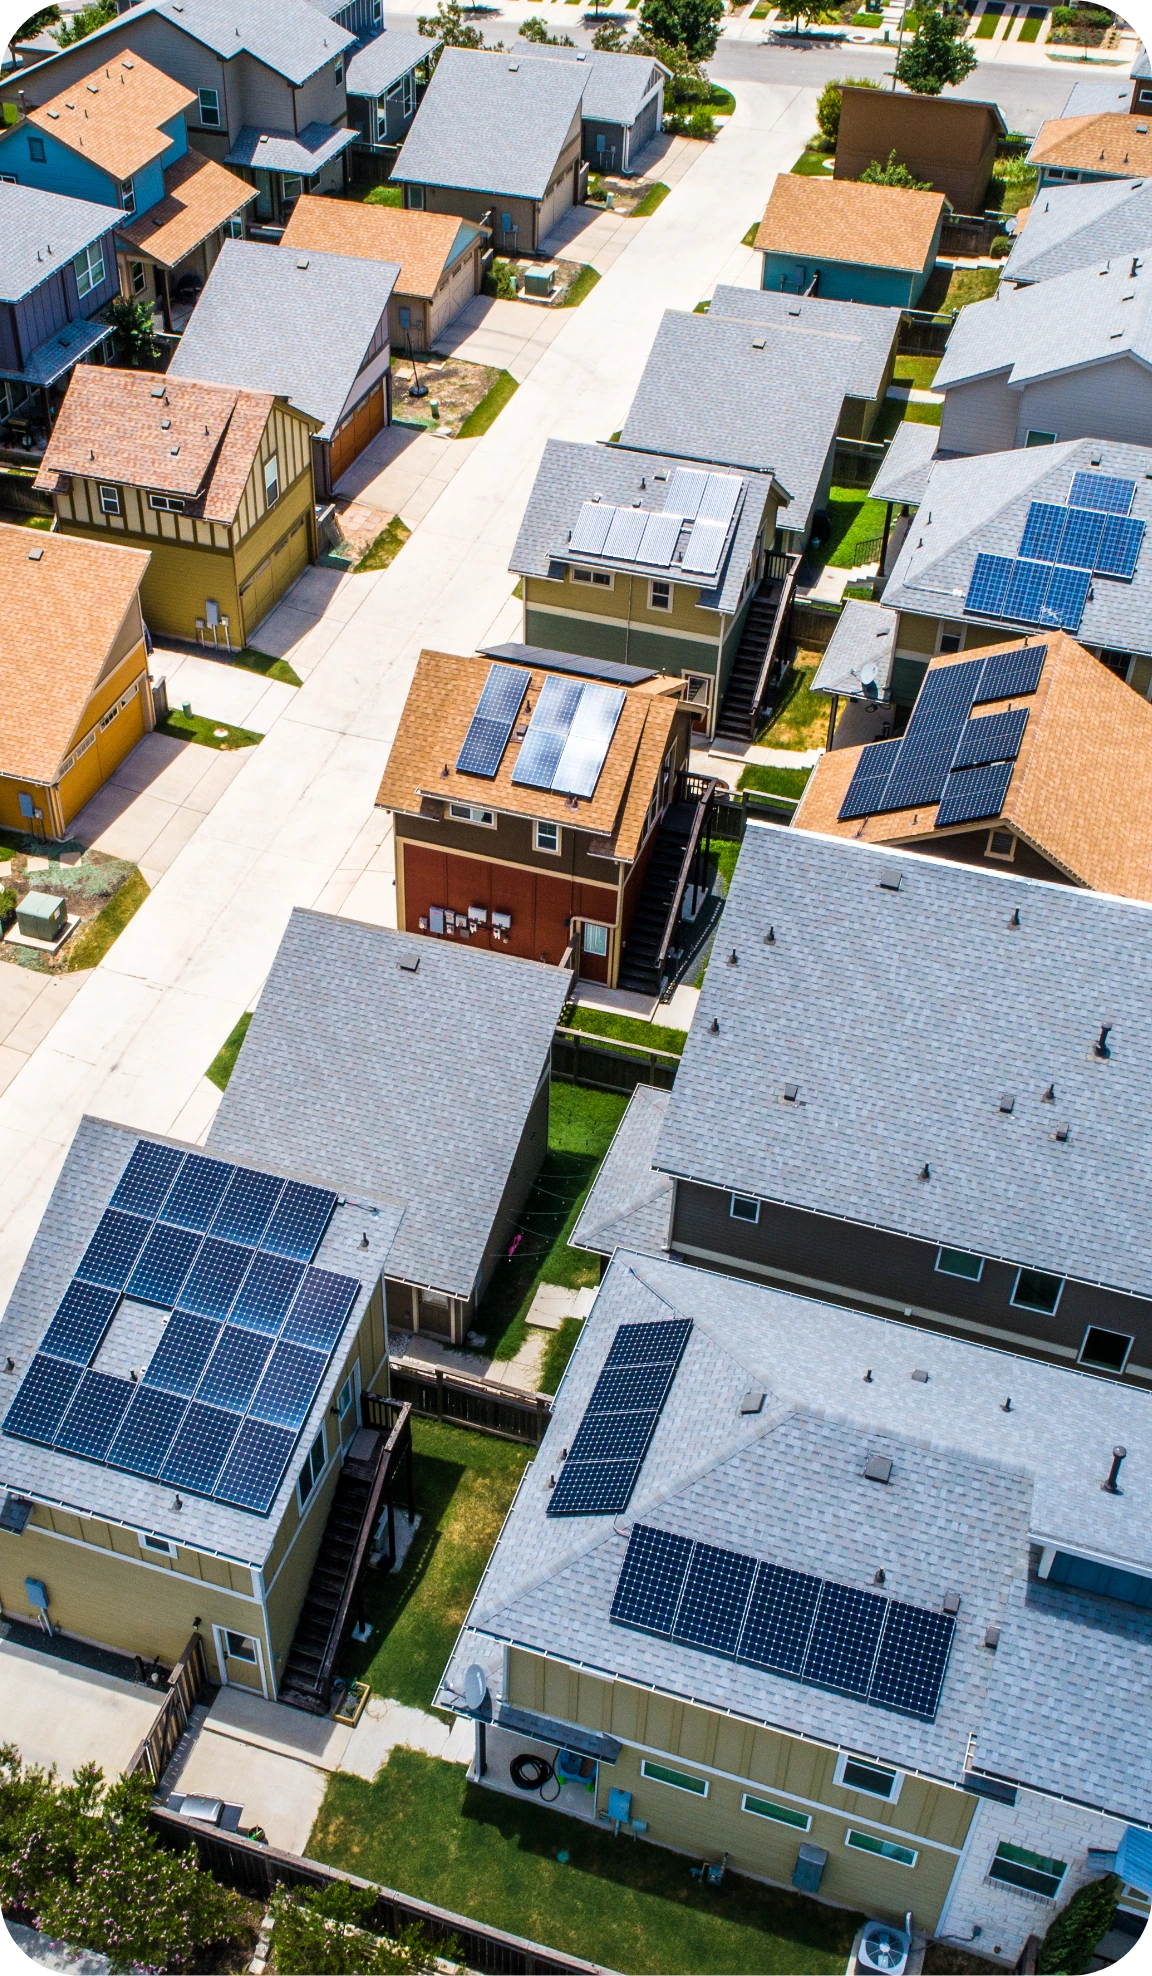 Neighborhood overhead view with solar panels